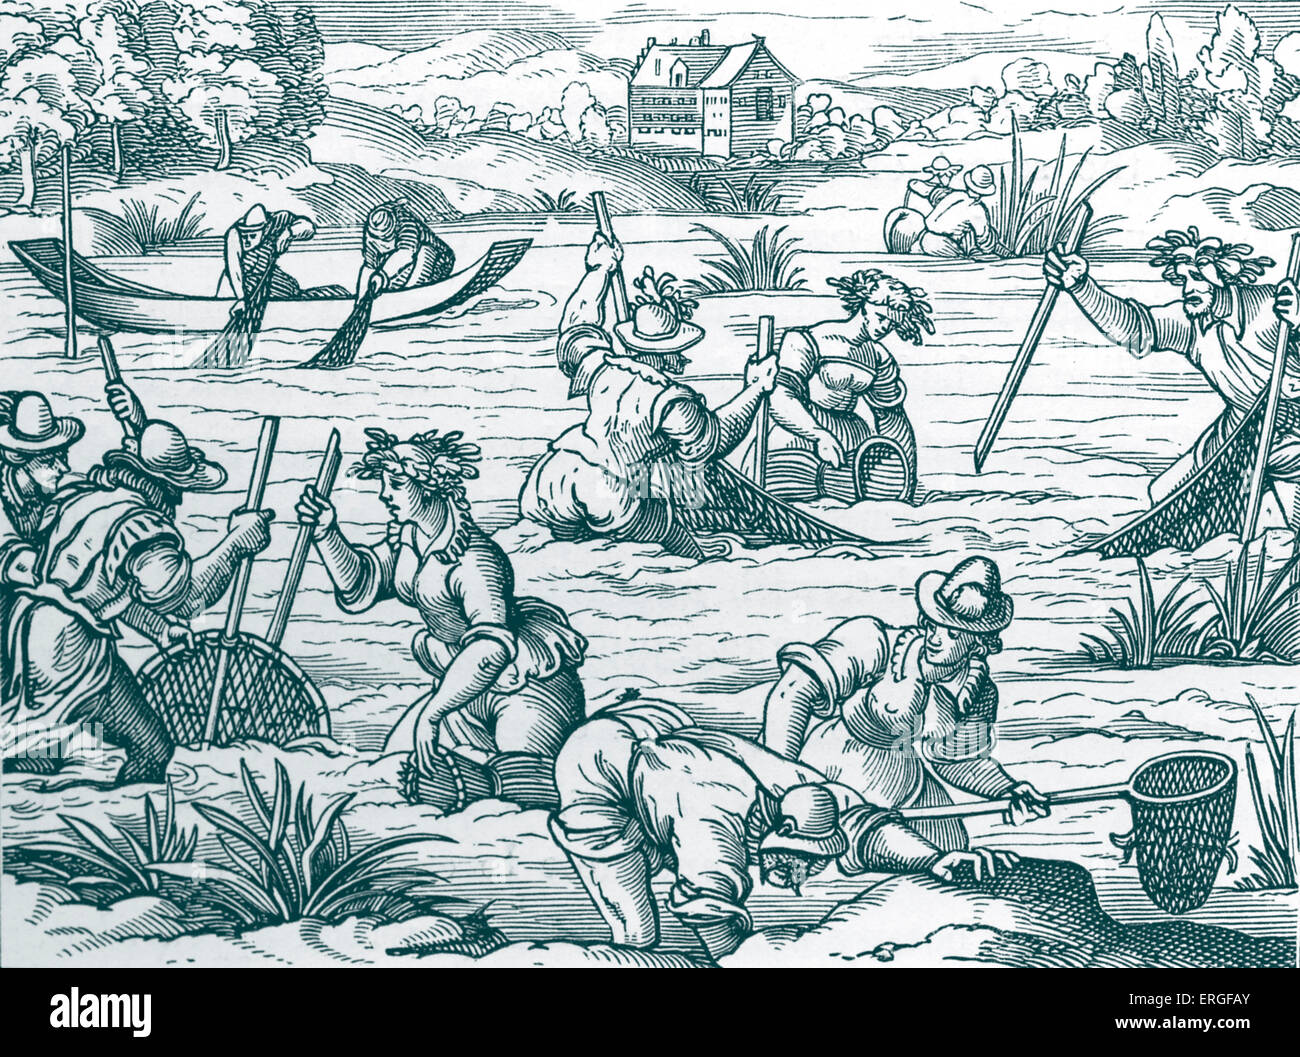 Pesca di fiume - dal facsimile della incisione su legno in edizione latina di Plinio (Gaio Plinio Secundus, il sambuco, autore romano, Foto Stock